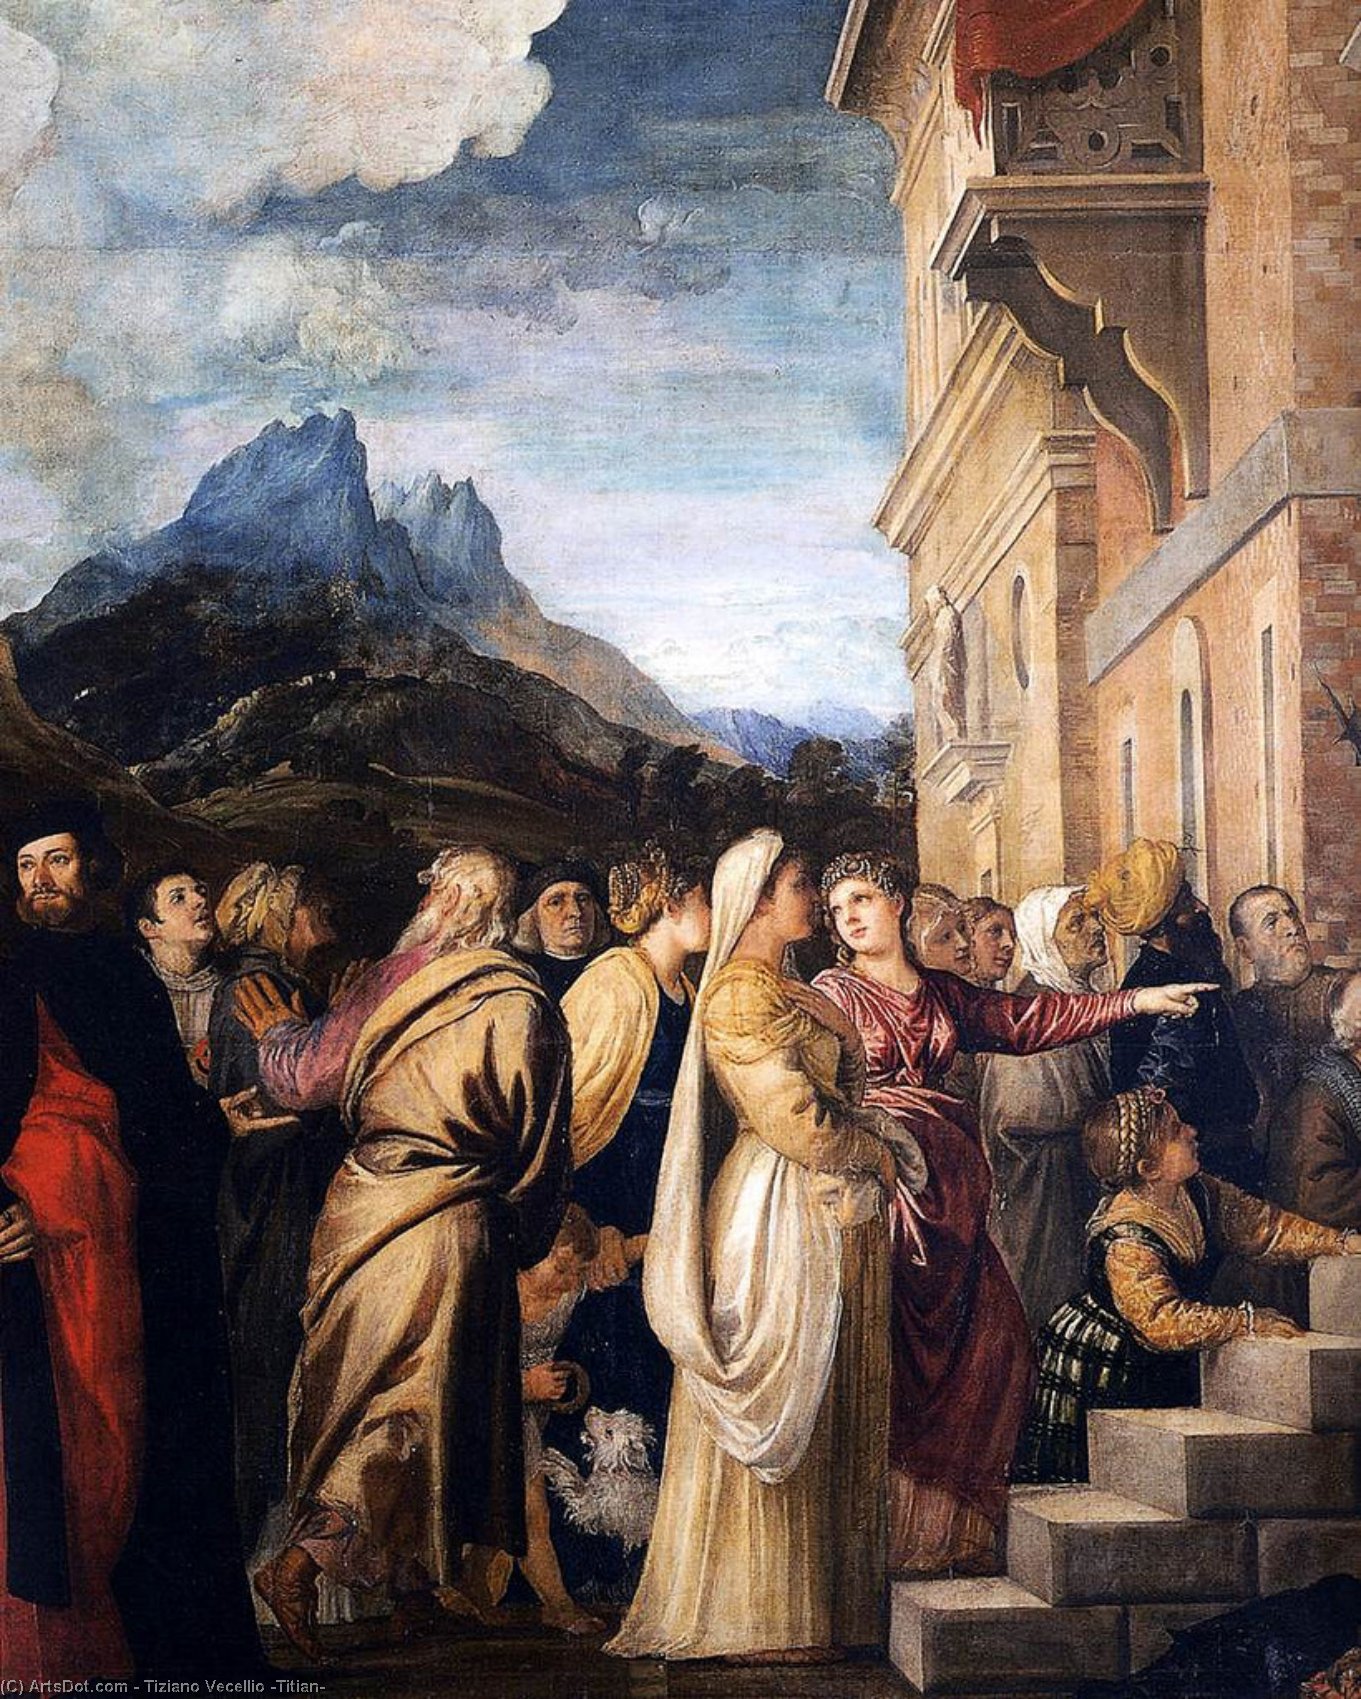 Wikioo.org - Bách khoa toàn thư về mỹ thuật - Vẽ tranh, Tác phẩm nghệ thuật Tiziano Vecellio (Titian) - Presentation of the Virgin at the Temple (detail)